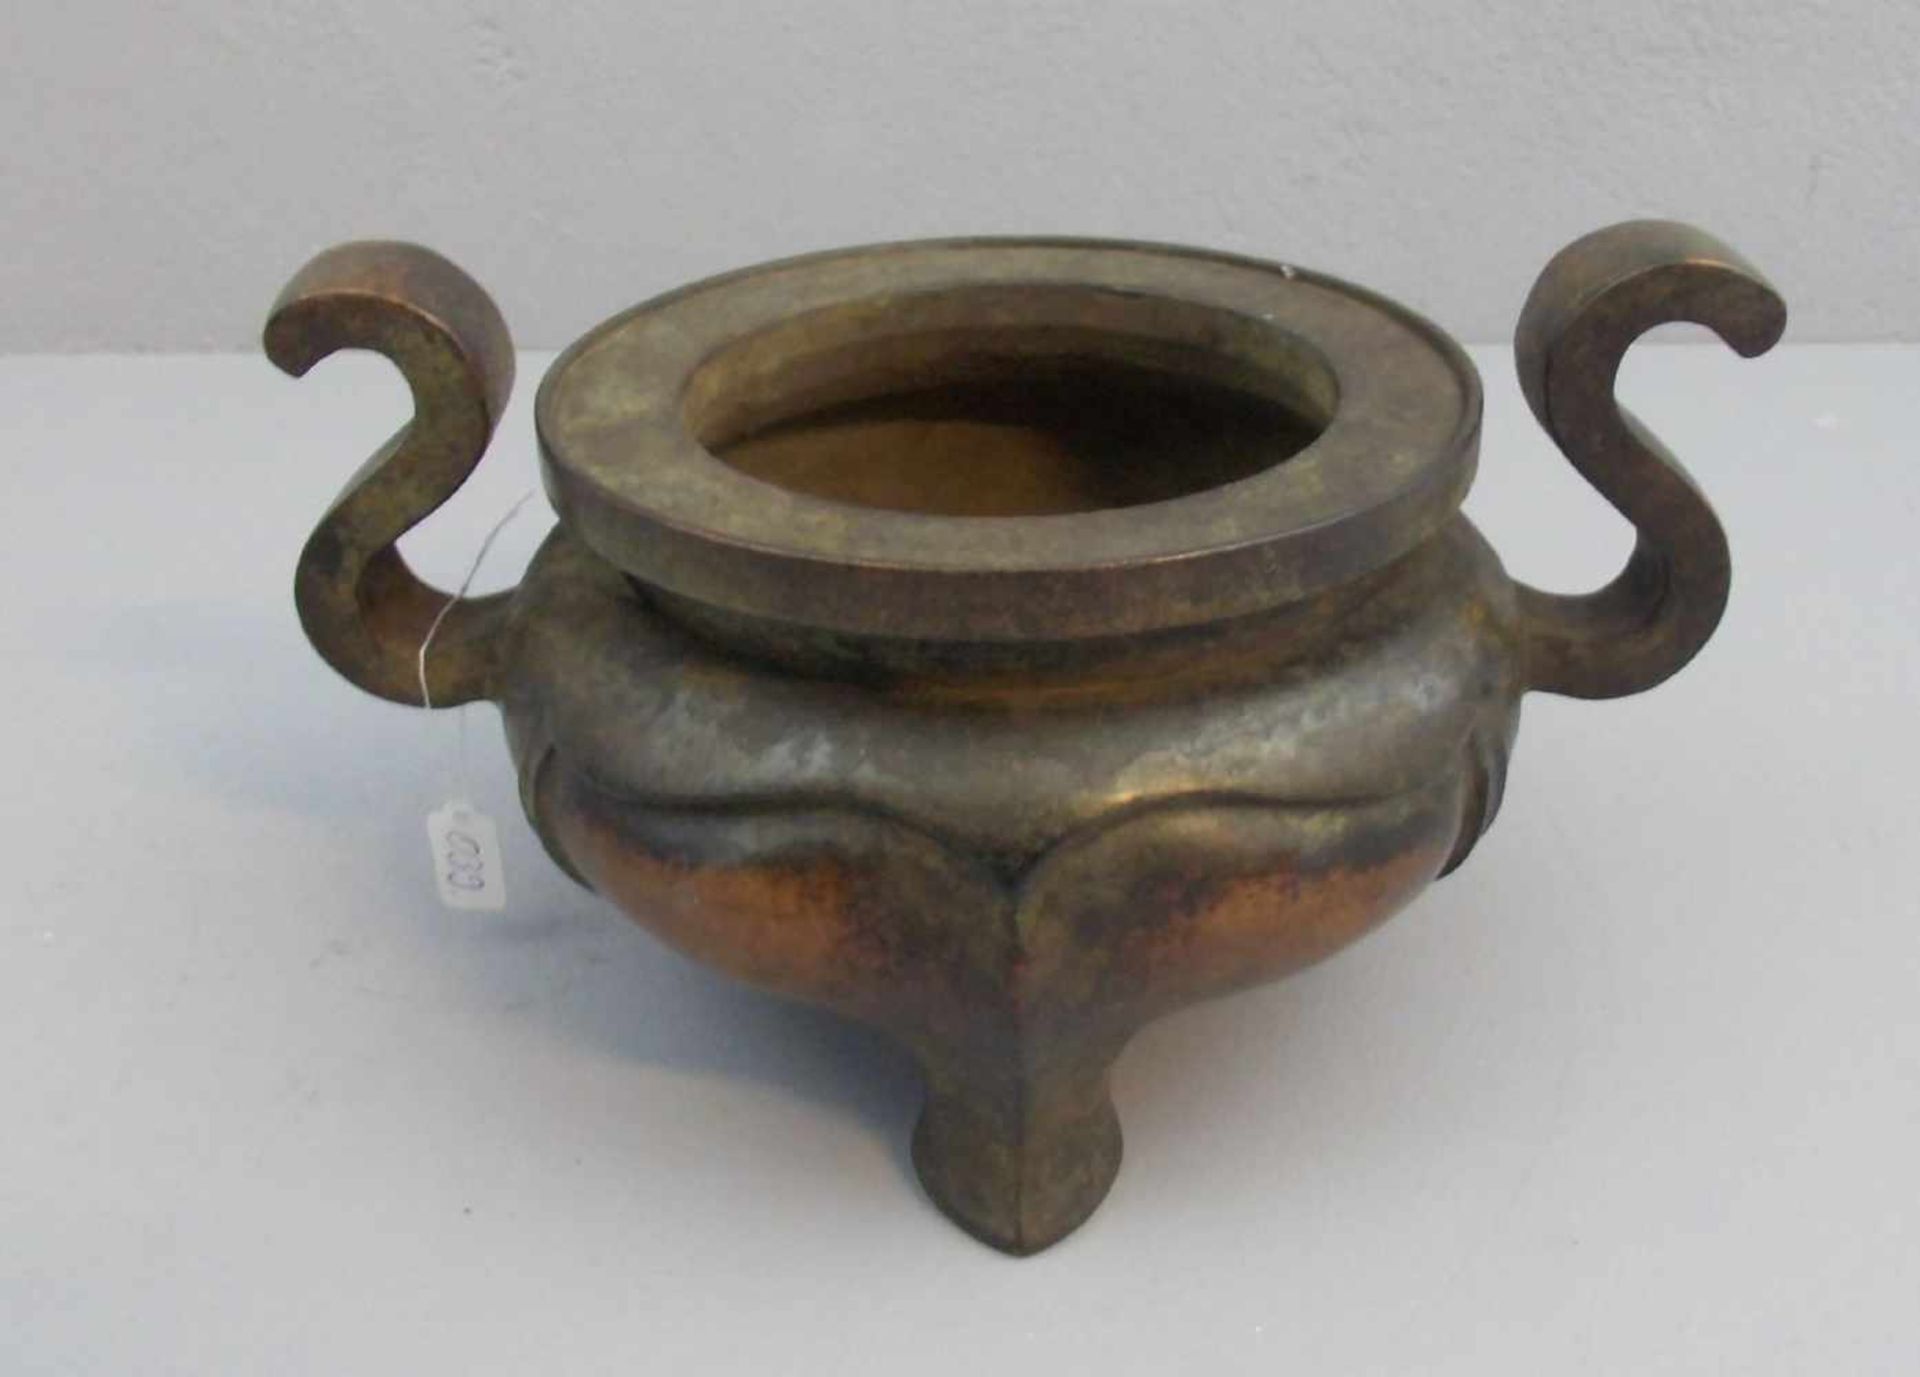 KORO / WEIHRAUCHGEFÄSS / incense holder, China, dunkel patinierte Bronze. Gebauchte Form mit